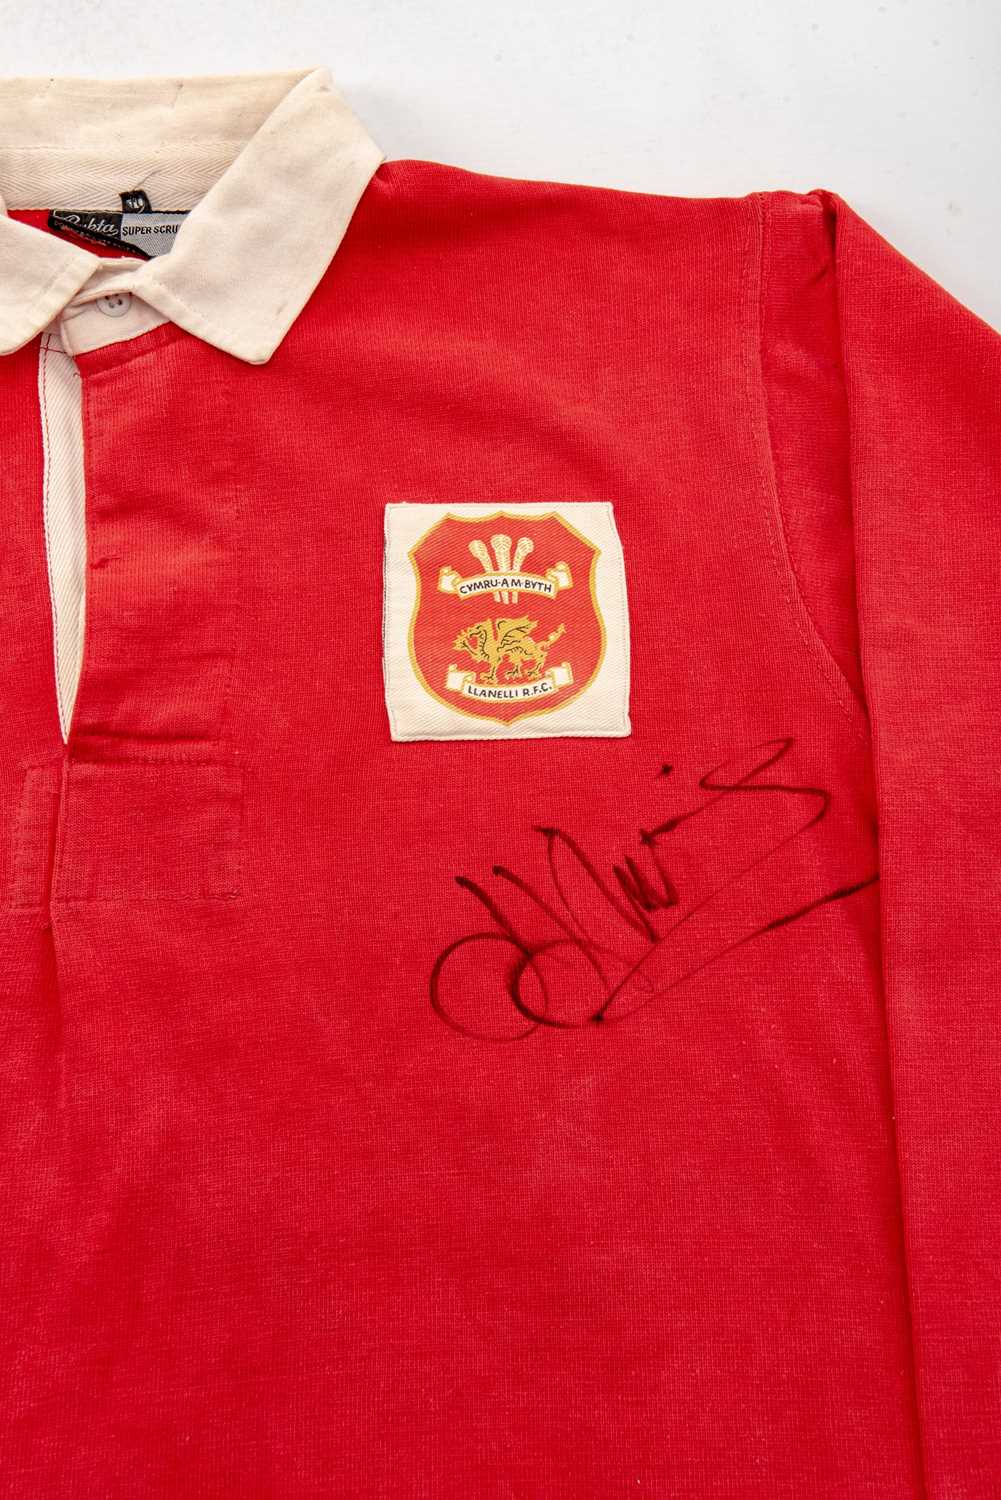 J J WILLIAMS | LLANELLI RFC 1970s match-worn jersey for J J Williams MBE (1948-2020). The jersey